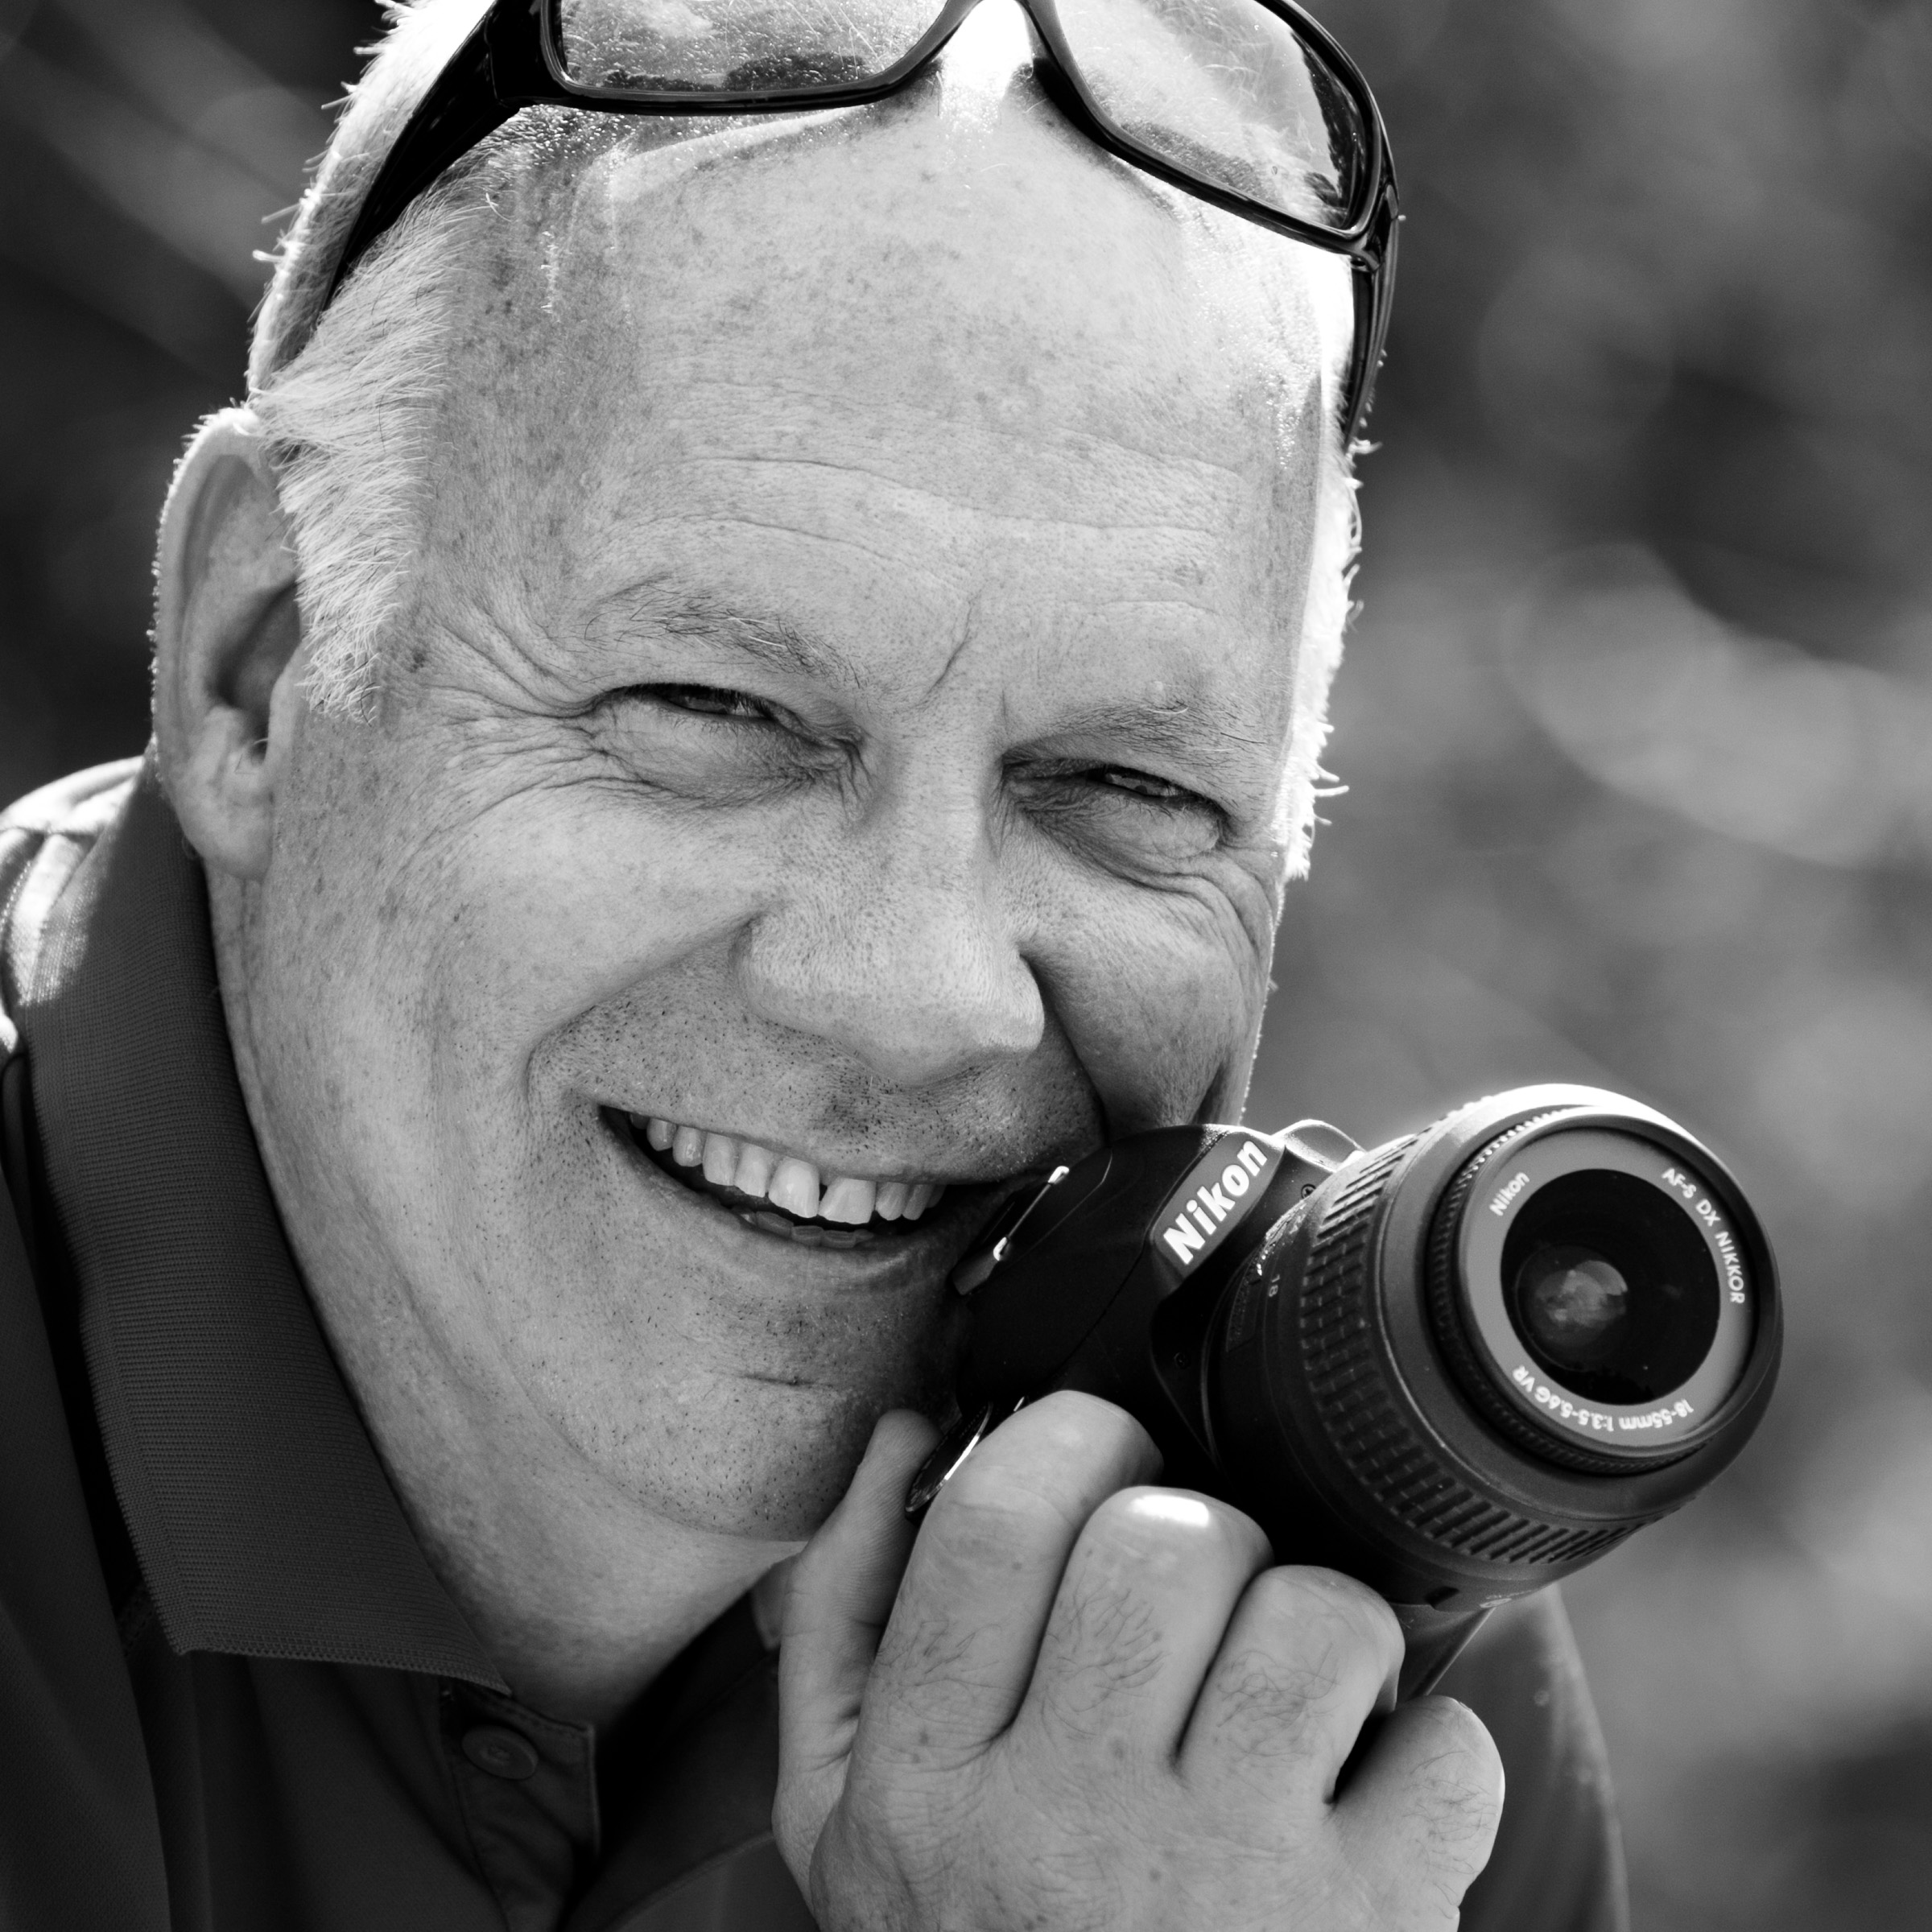 Monsieur André Dussault, amoureux des photographes qui tient sa caméra en noir et blanc. Portrait pour témoignage sur AVENTURES photo - espace voyages & ateliers.